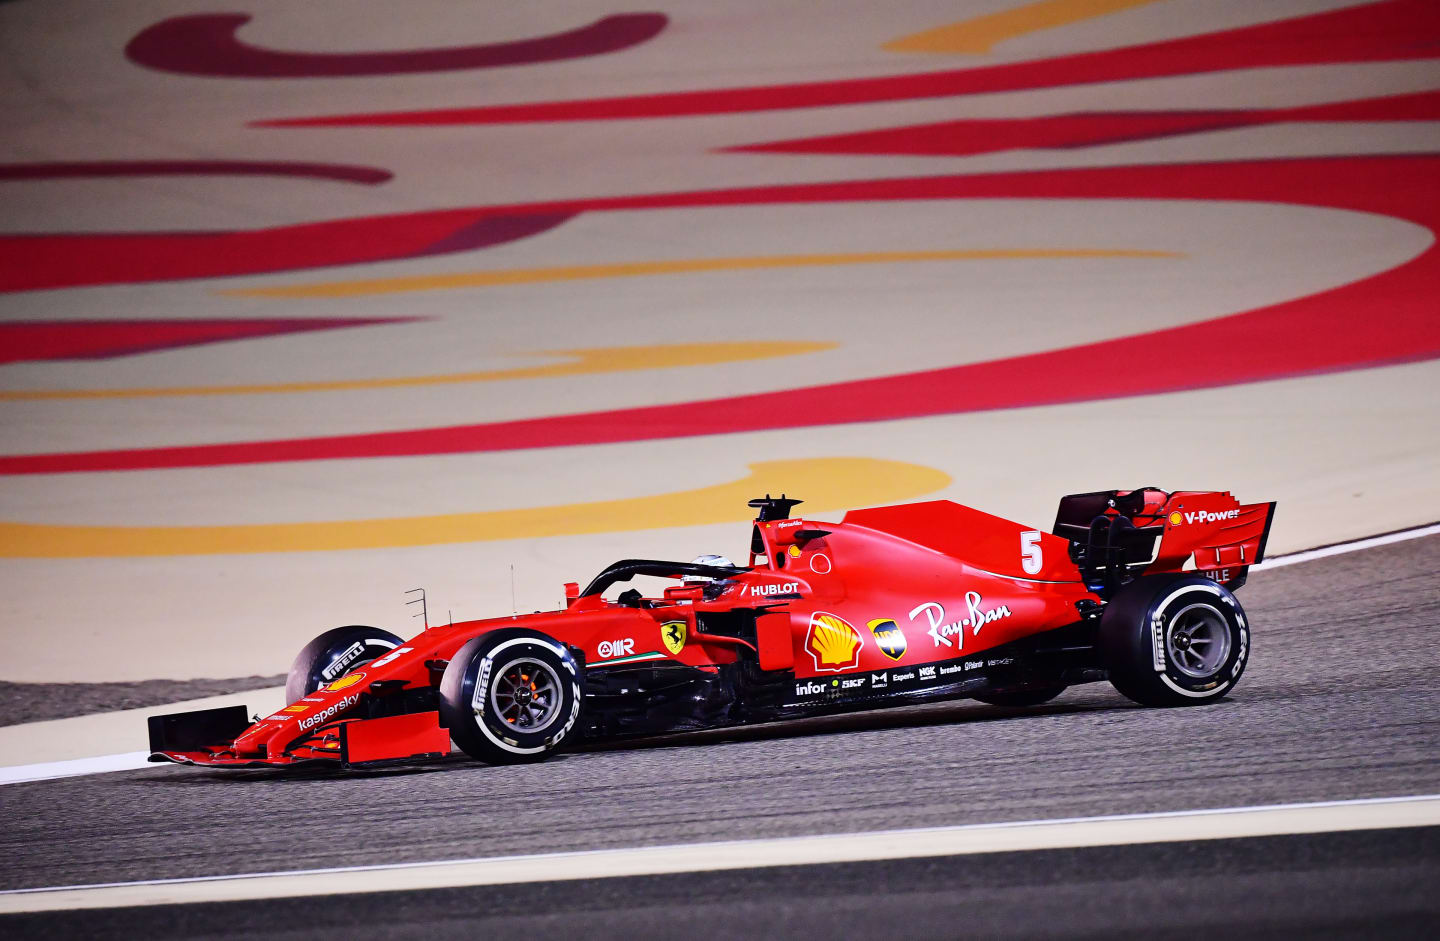 BAHRAIN, BAHRAIN - NOVEMBER 29: Sebastian Vettel of Germany driving the (5) Scuderia Ferrari SF1000